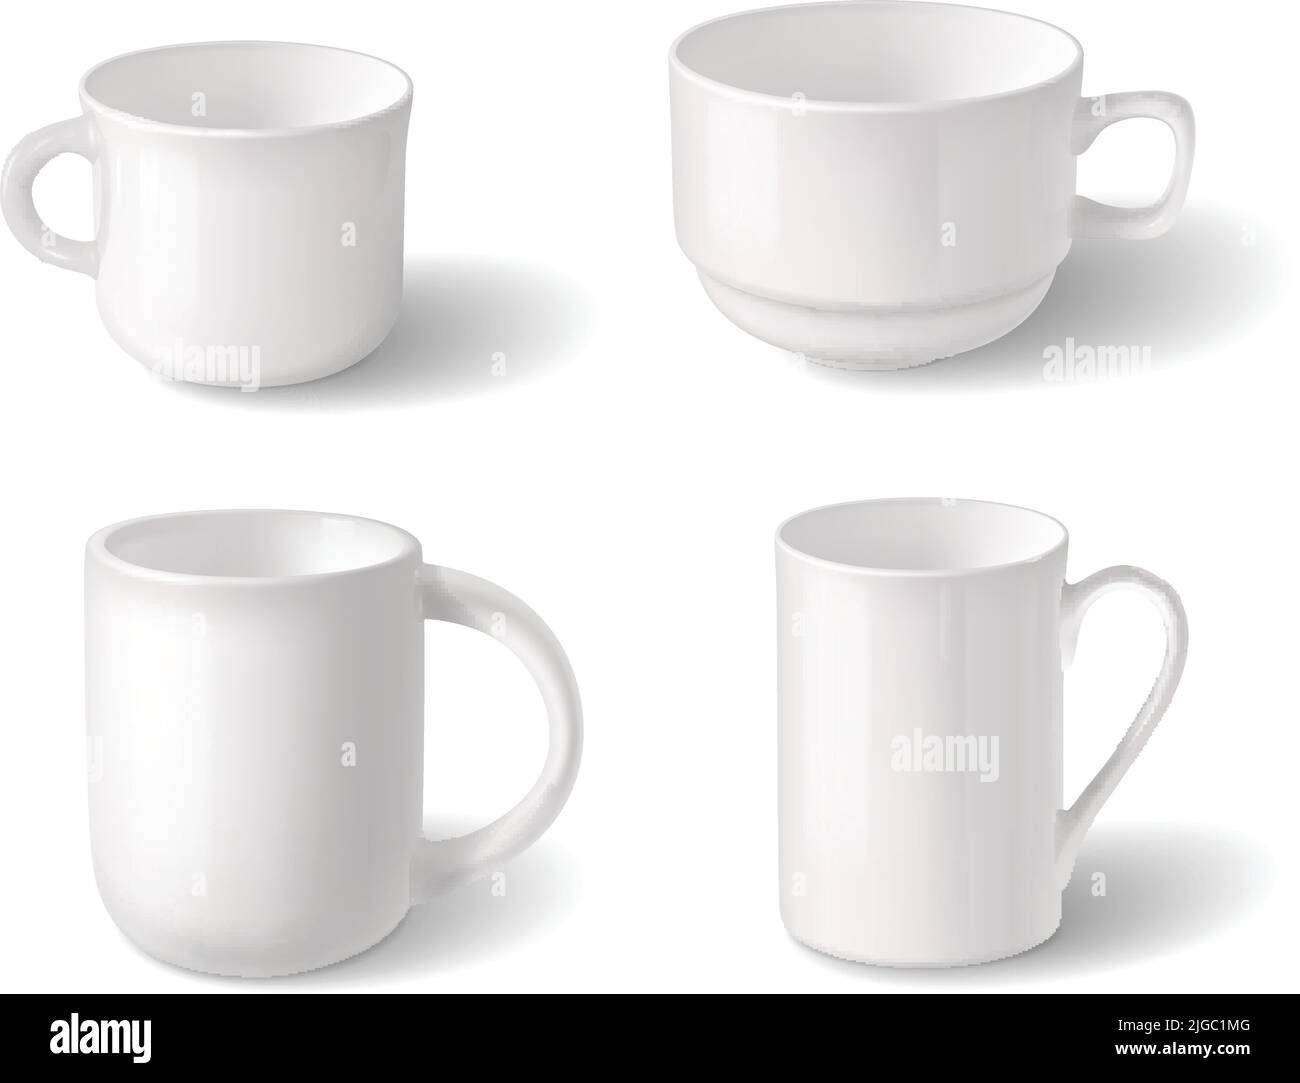 Design realistico delle tazze con quattro oggetti bianchi in porcellana vuoti per l'illustrazione vettoriale isolata di tè o caffè Illustrazione Vettoriale